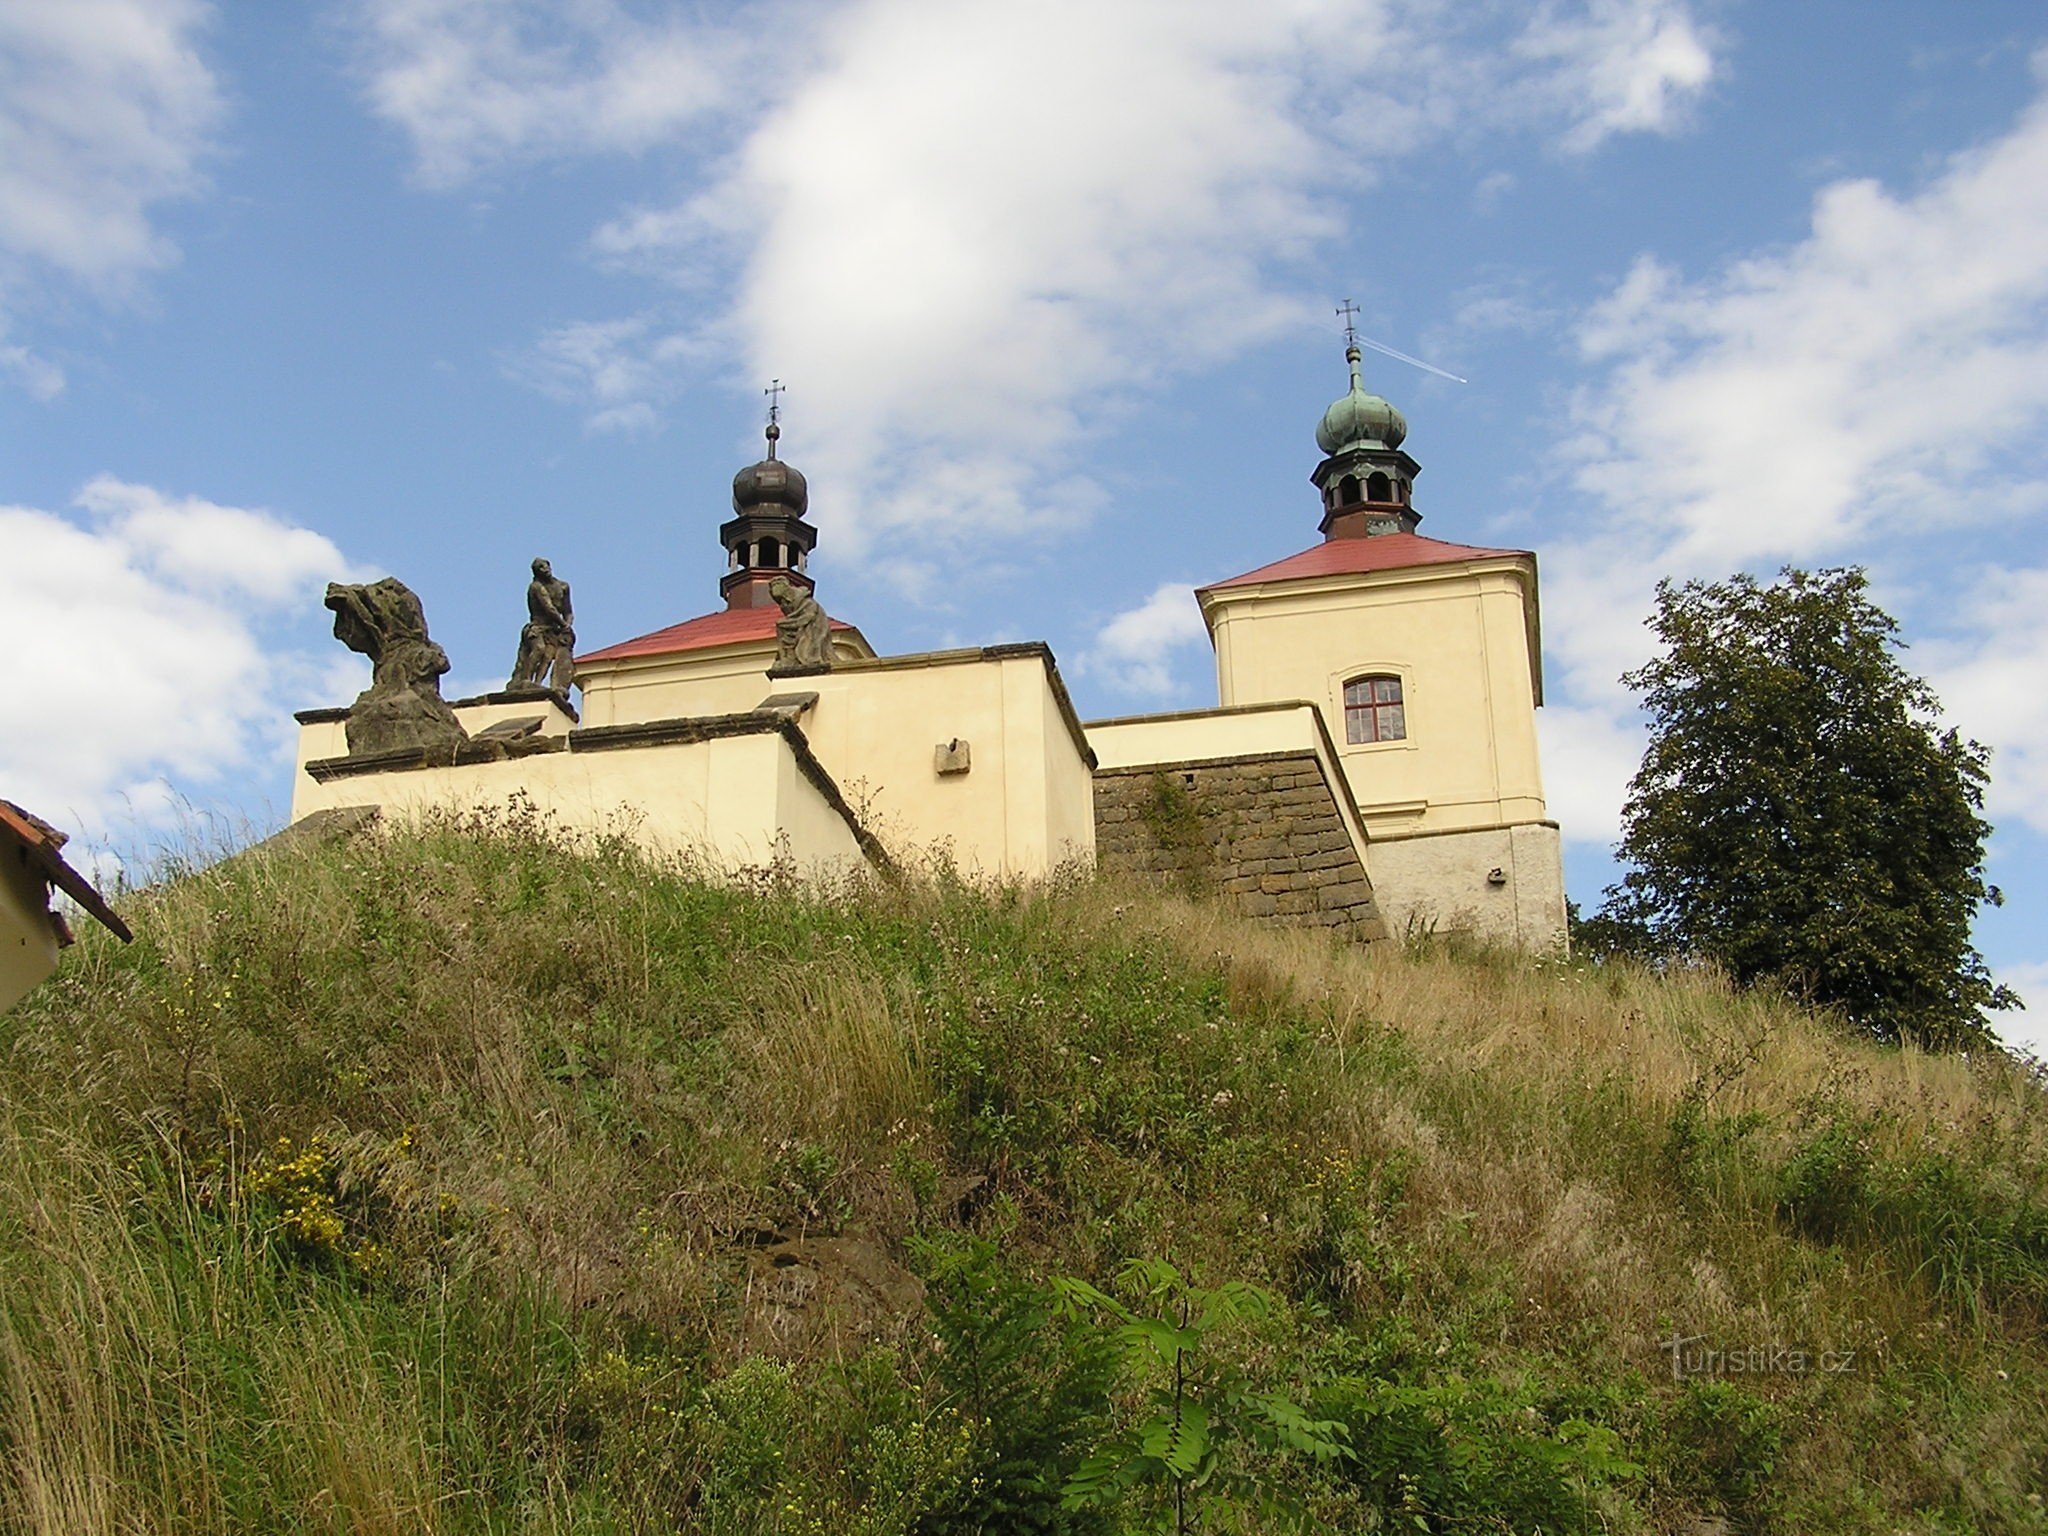 Ostré cerca de Úštěk (8/2014)